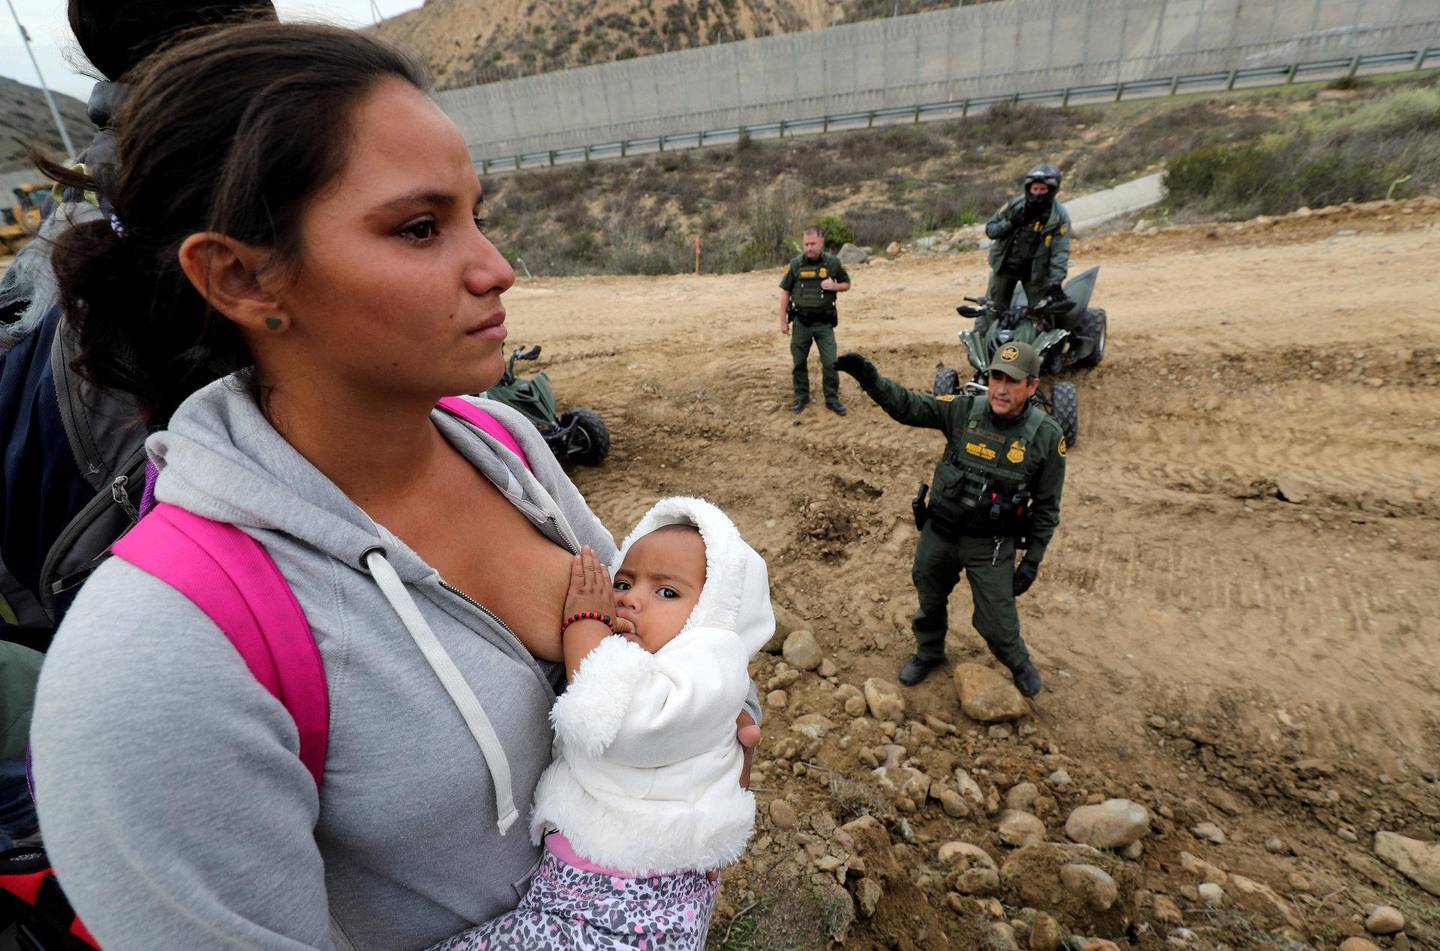 MED BARN: En migrant som er en del av karavanen holder babyen sin mens hun forsøker å krysse grensen ved Tijuana i Mexico. FOTO: NTB SCANPIX